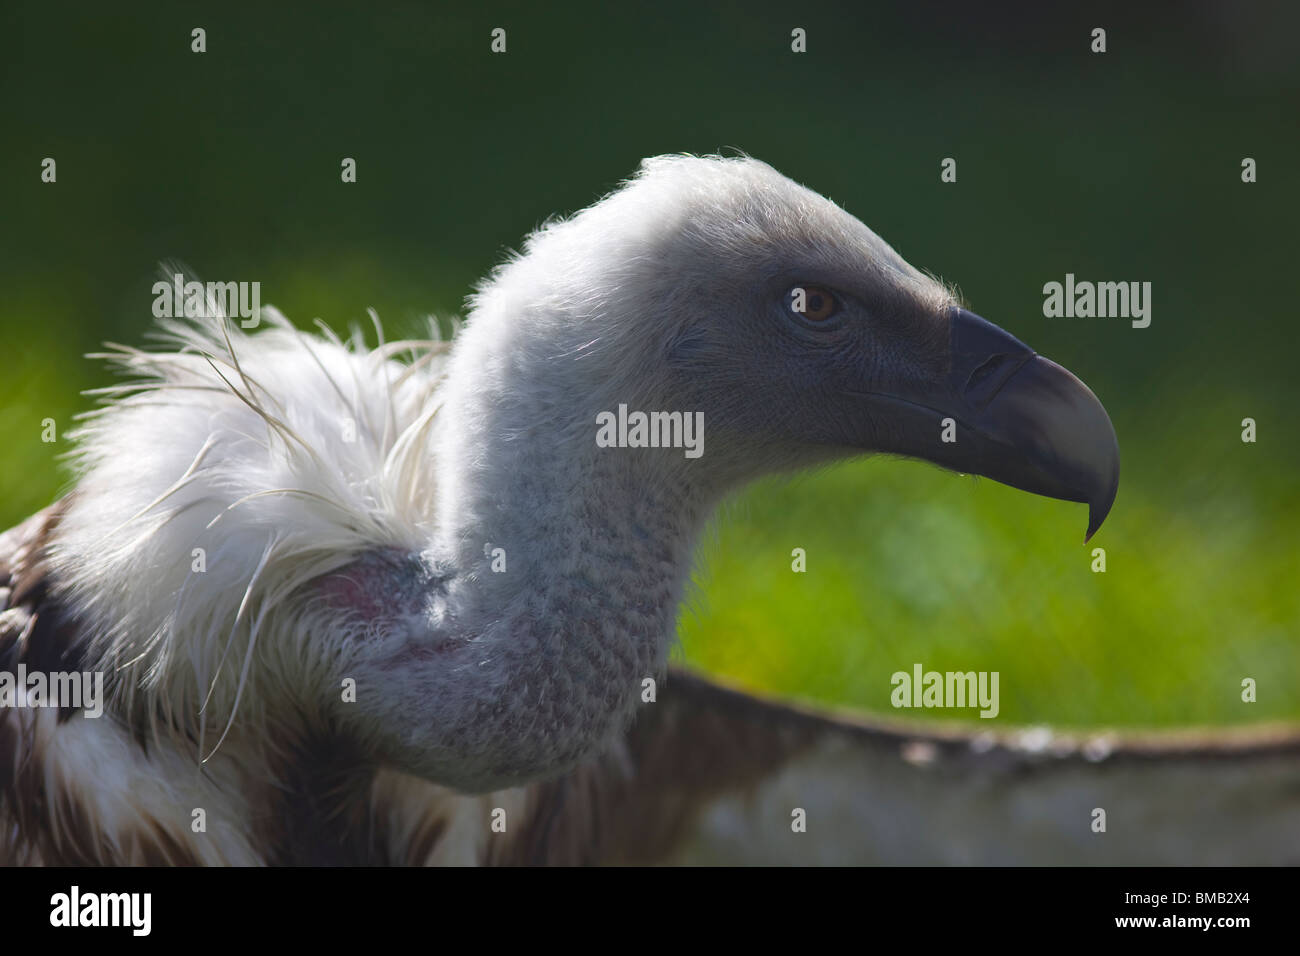 Avvoltoio grifone con ala open close up Foto Stock